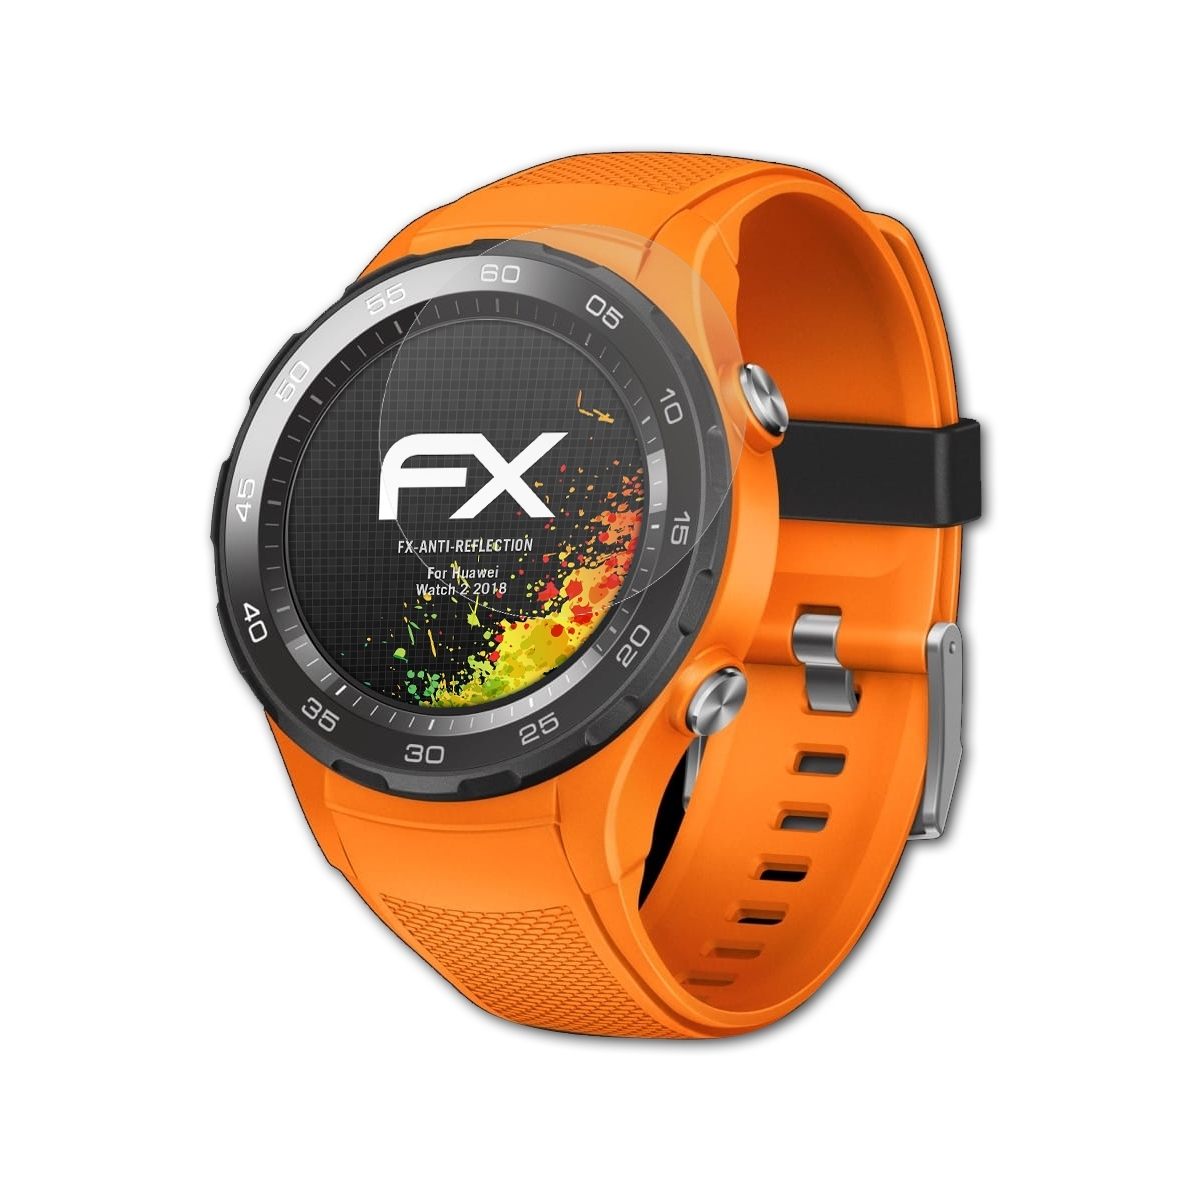 FX-Antireflex 2 Watch ATFOLIX Displayschutz(für Huawei 2018) 3x